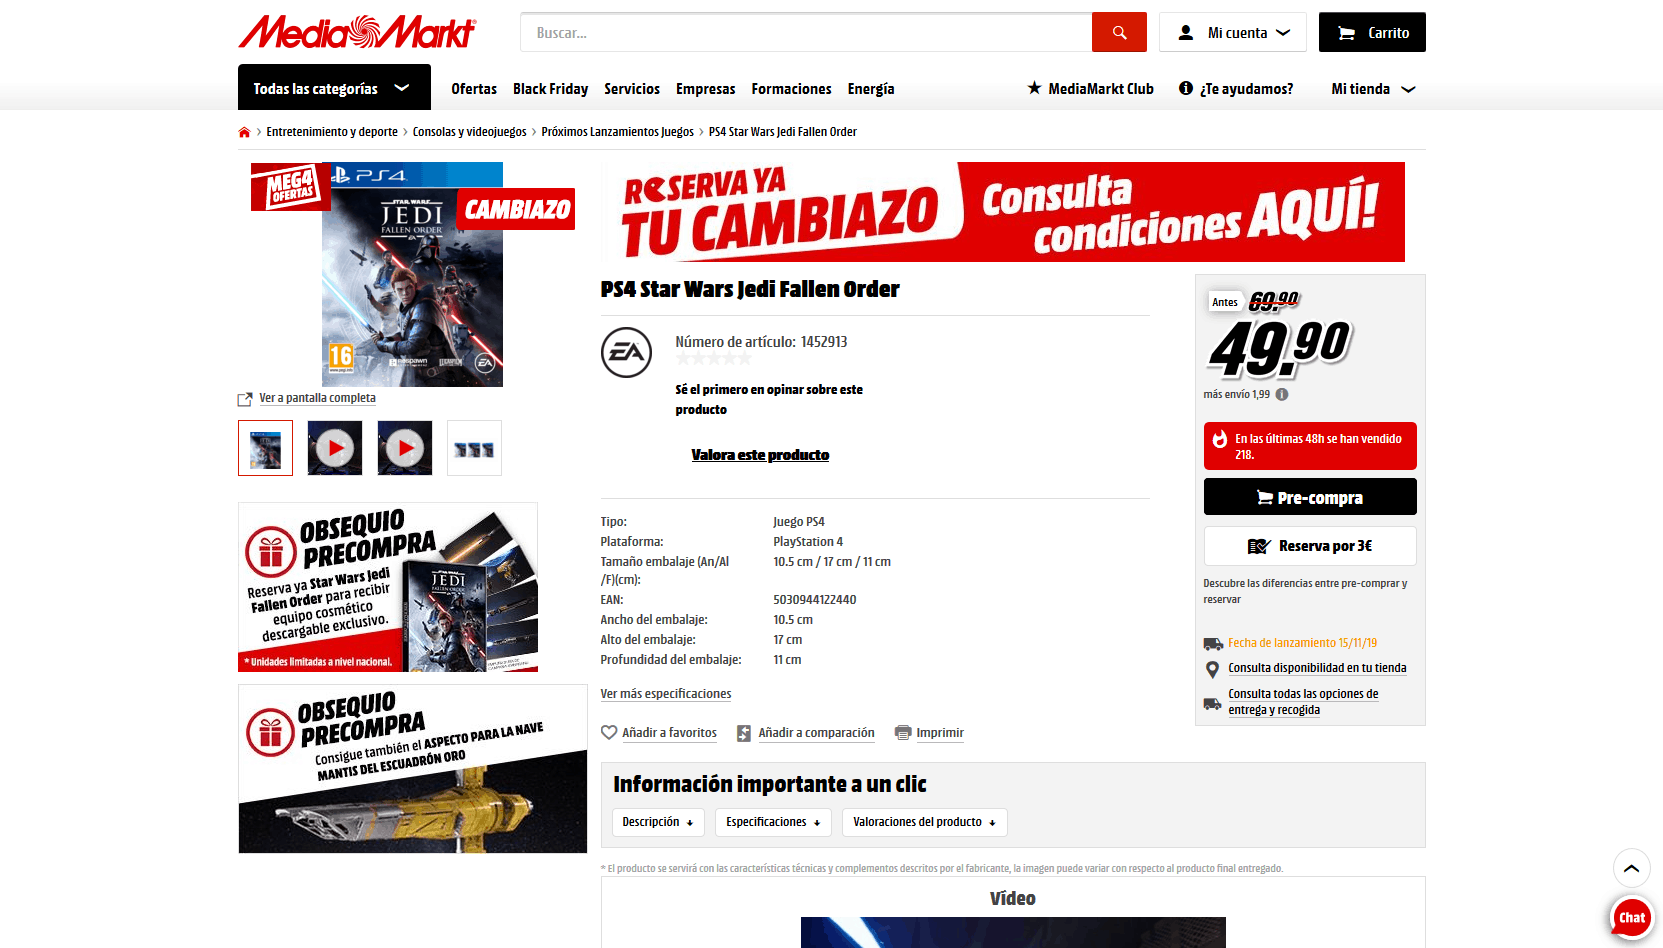 Cambiazo Media Markt para Star Wars Jedi Fallen Order por 49.90€